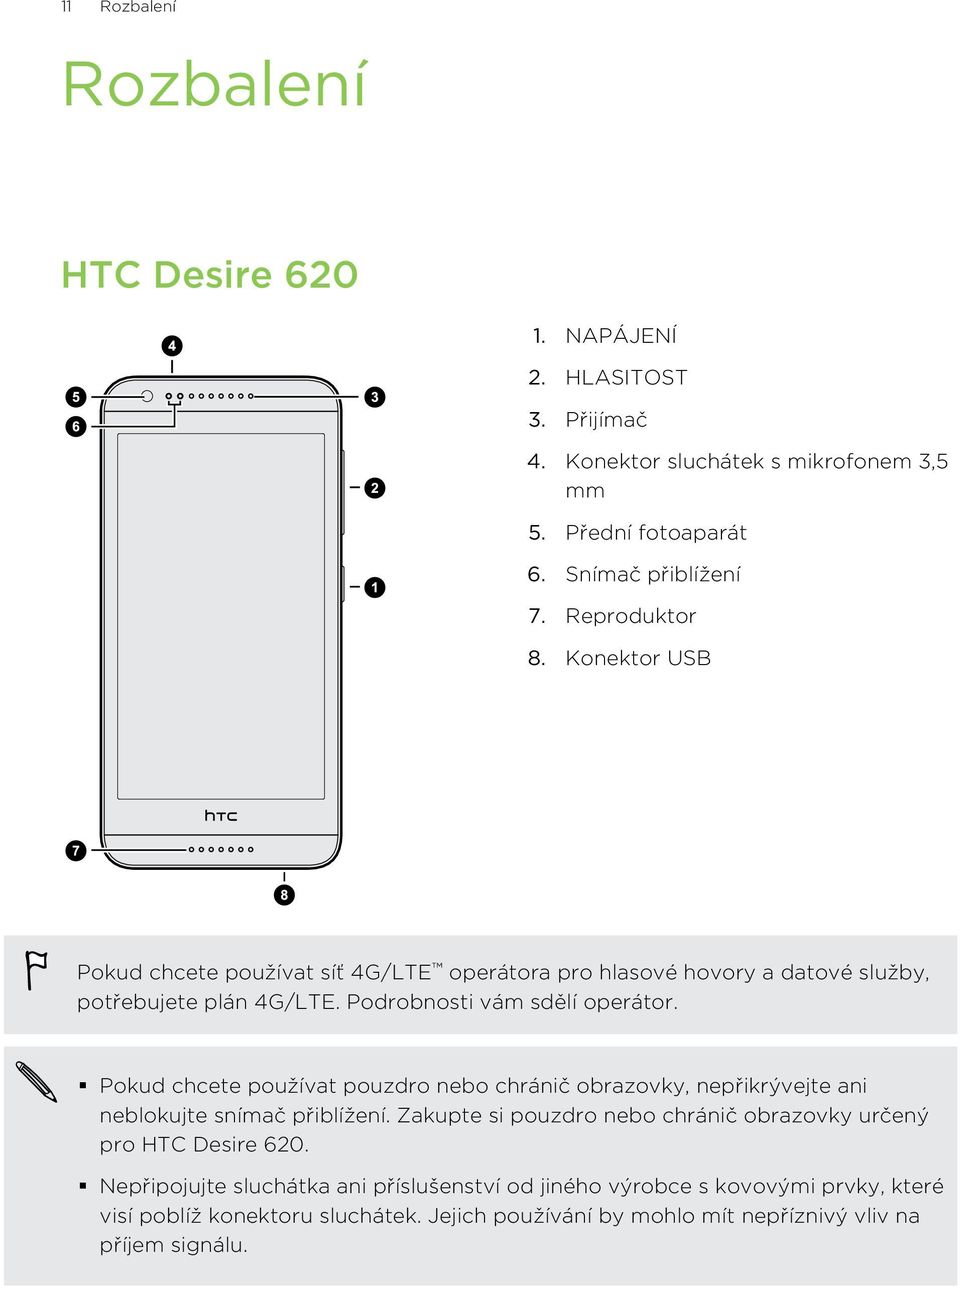 Pokud chcete používat pouzdro nebo chránič obrazovky, nepřikrývejte ani neblokujte snímač přiblížení. Zakupte si pouzdro nebo chránič obrazovky určený pro HTC Desire 620.